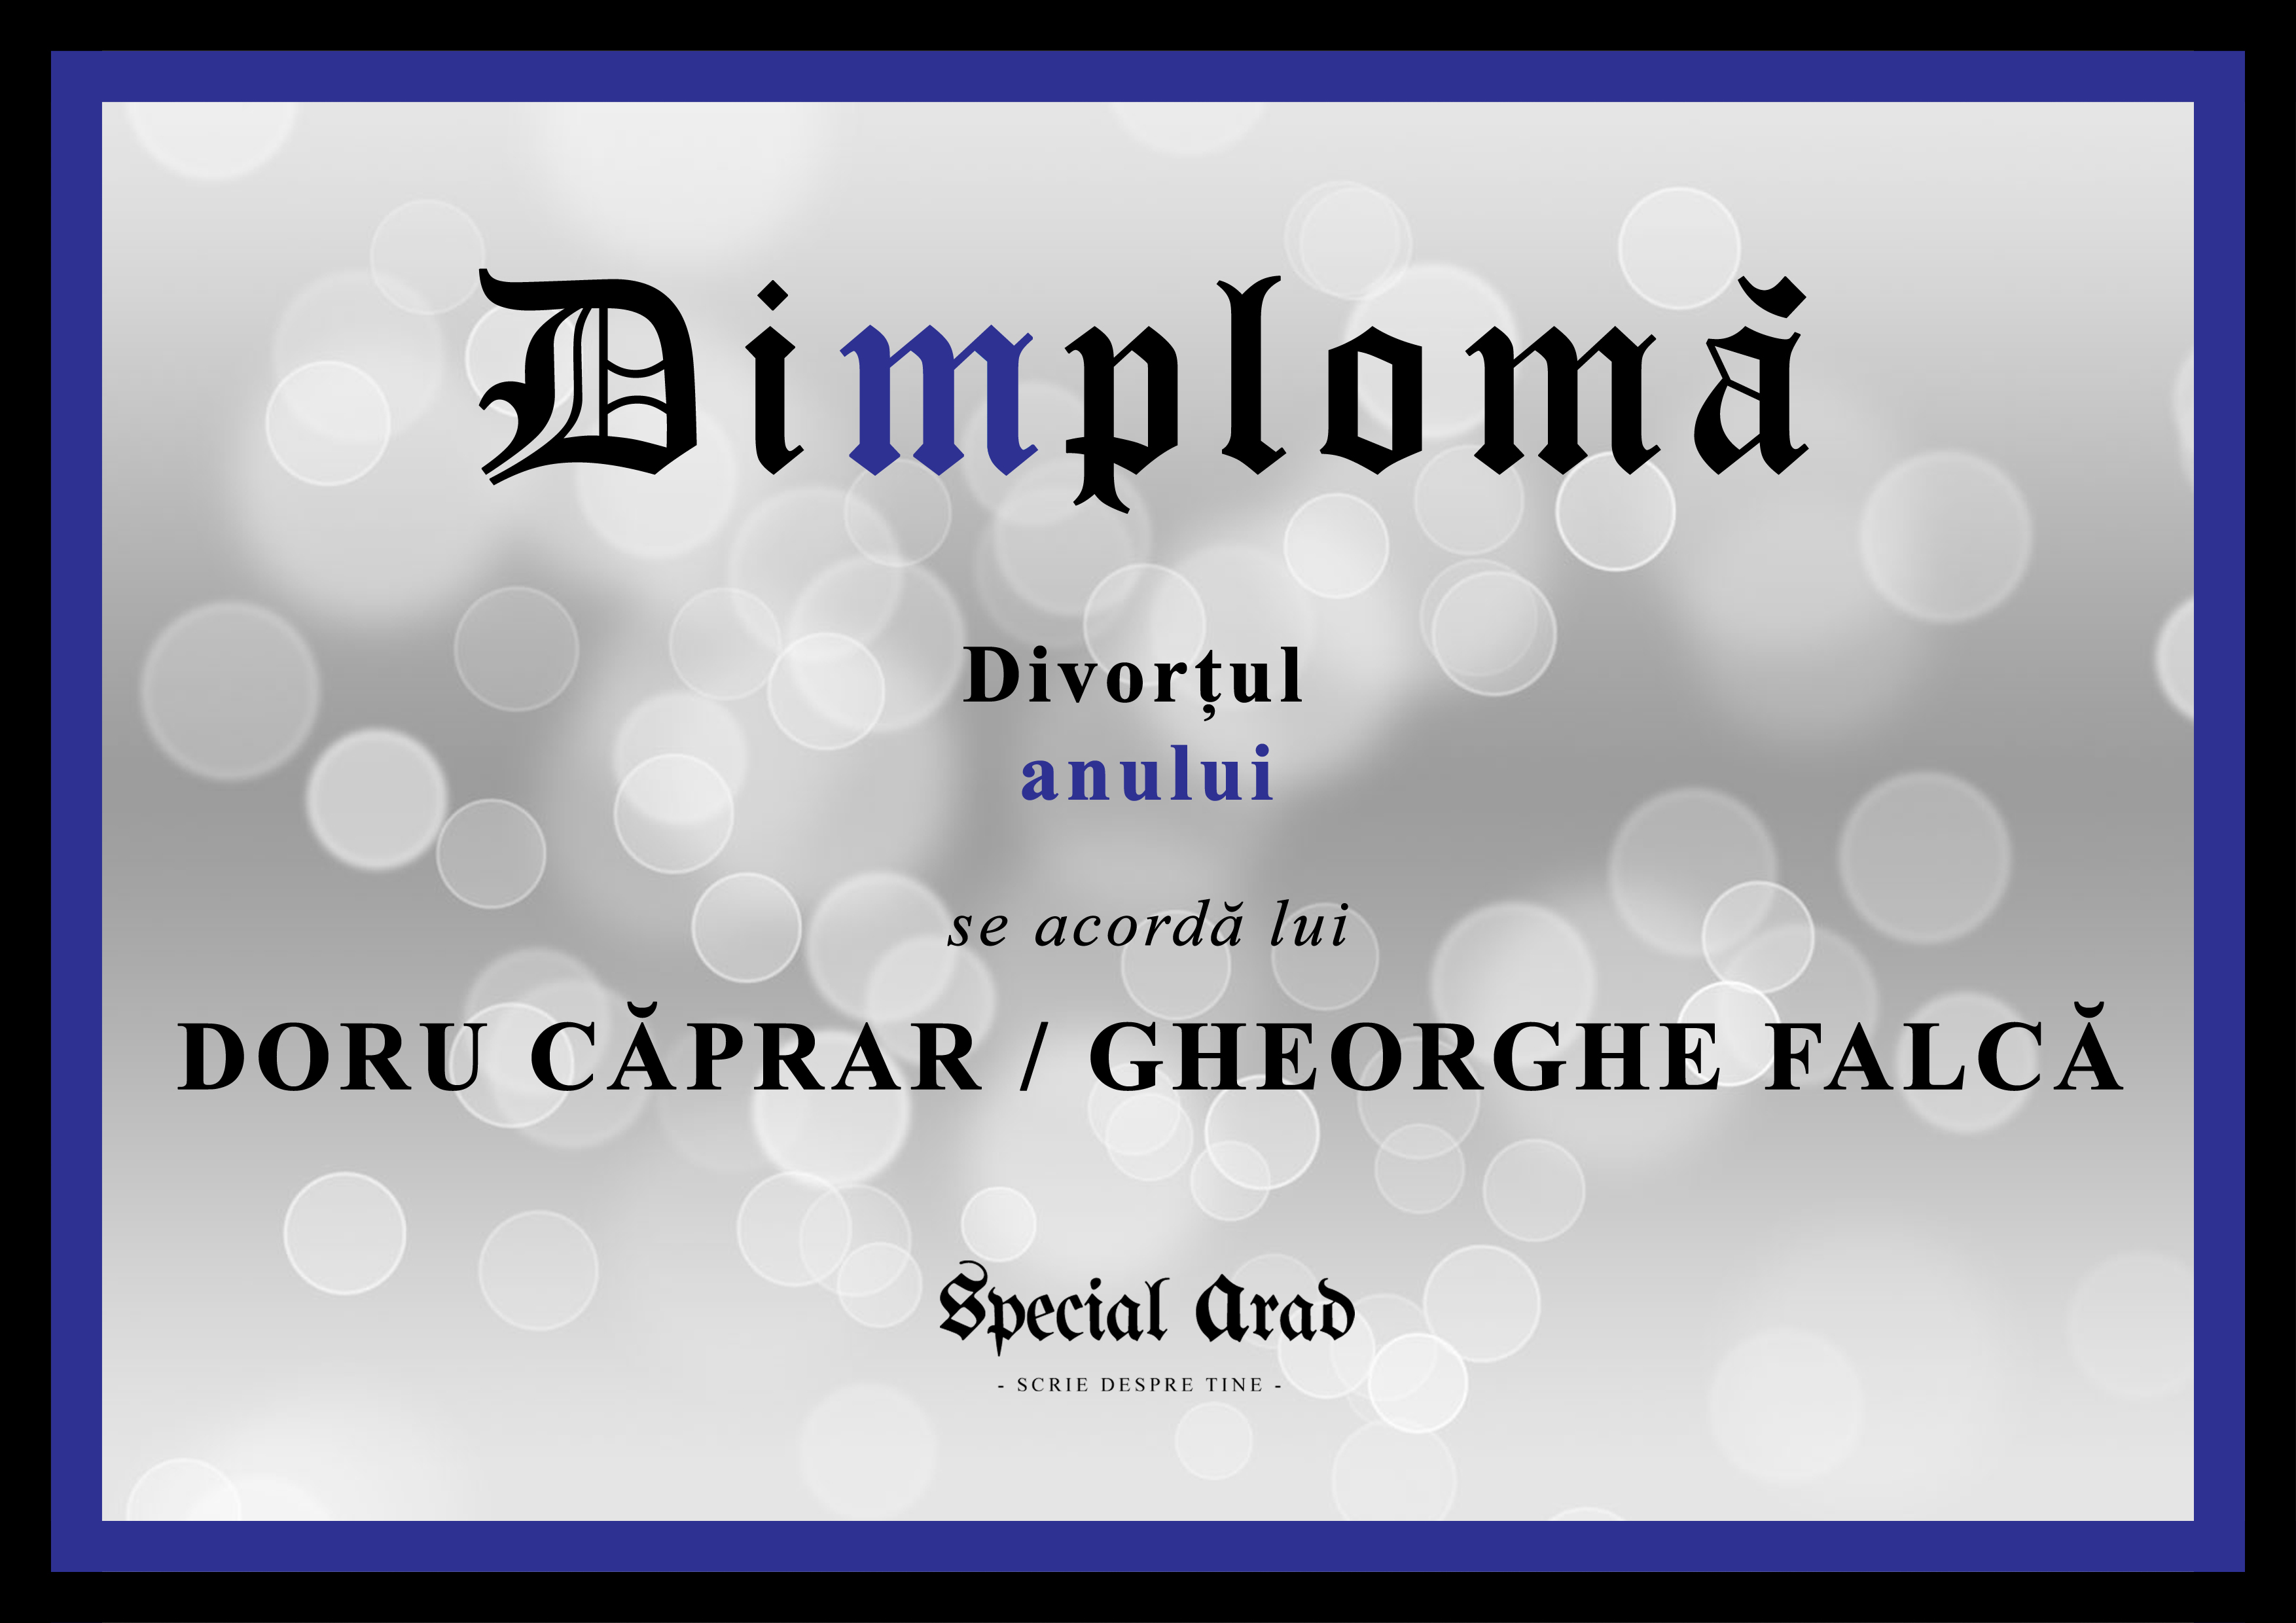 dimploma-divortul-anului